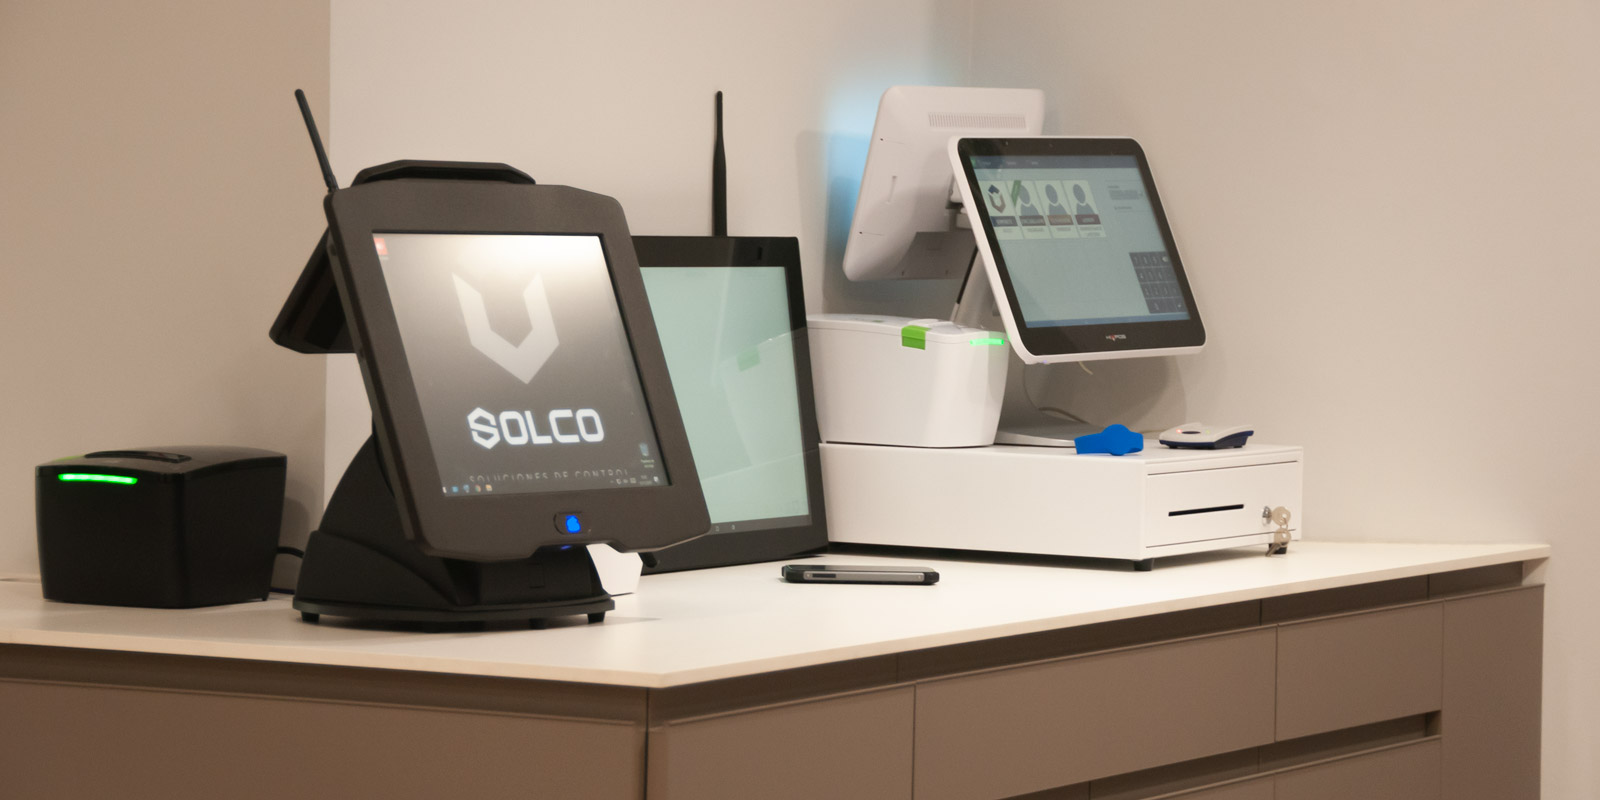 ¡Bienvenidos a la página web de SOLCO!